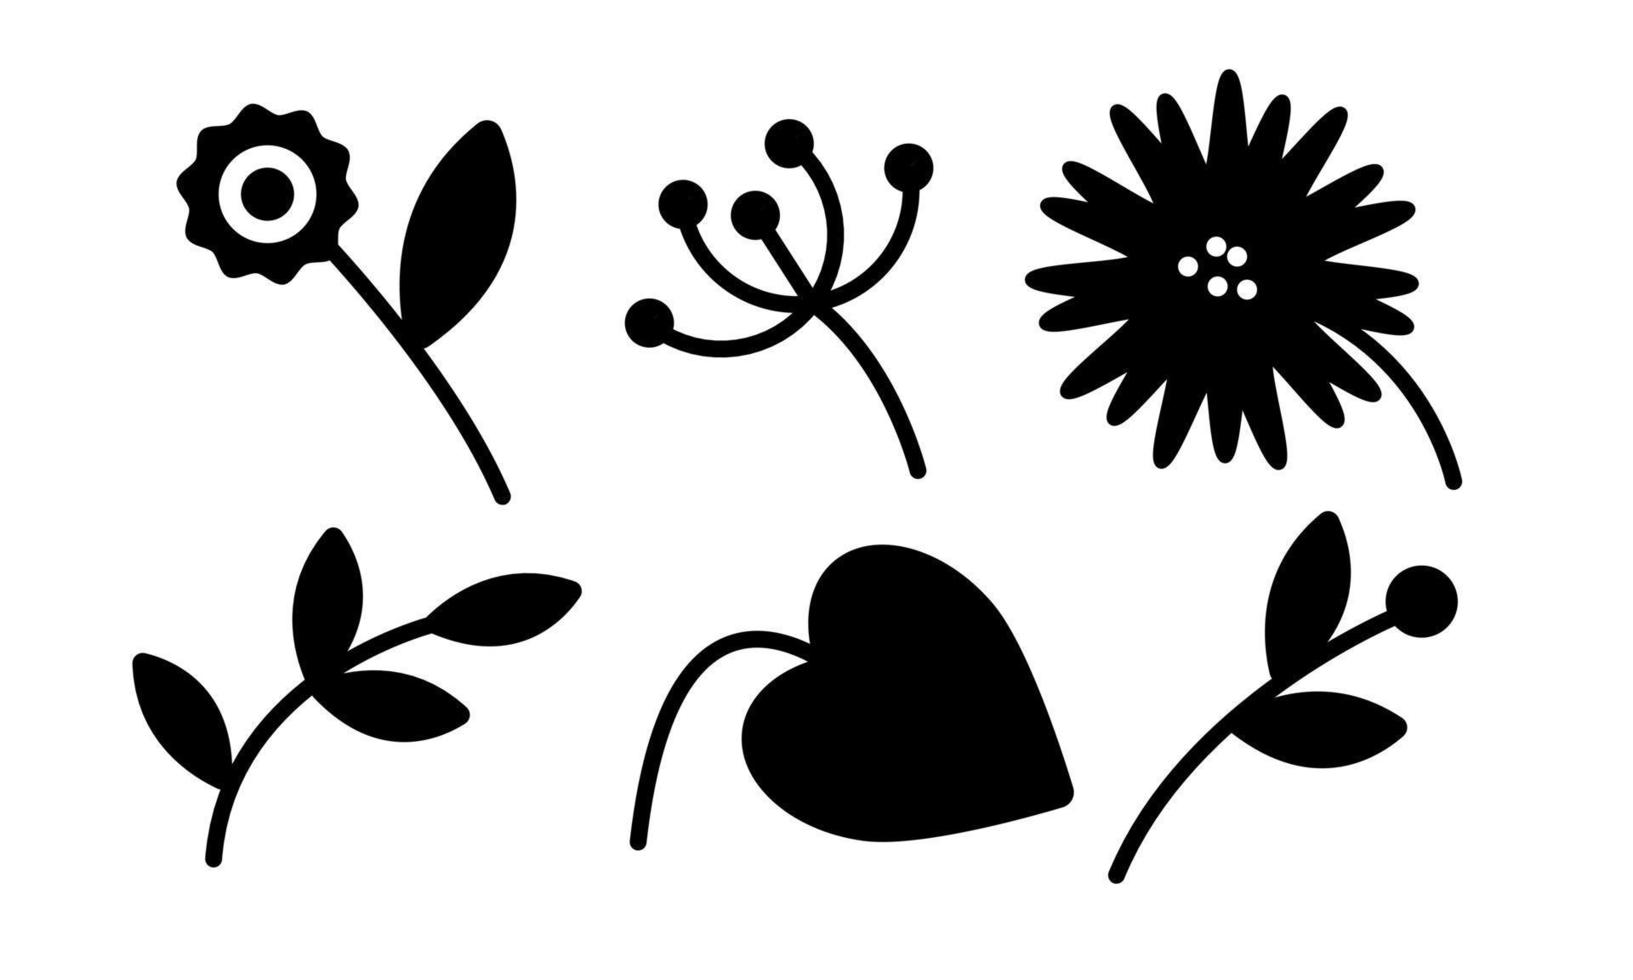 elementos florales silueta de simplemente formas flor y hoja. ilustración vectorial sobre fondo blanco para web, impresión vector